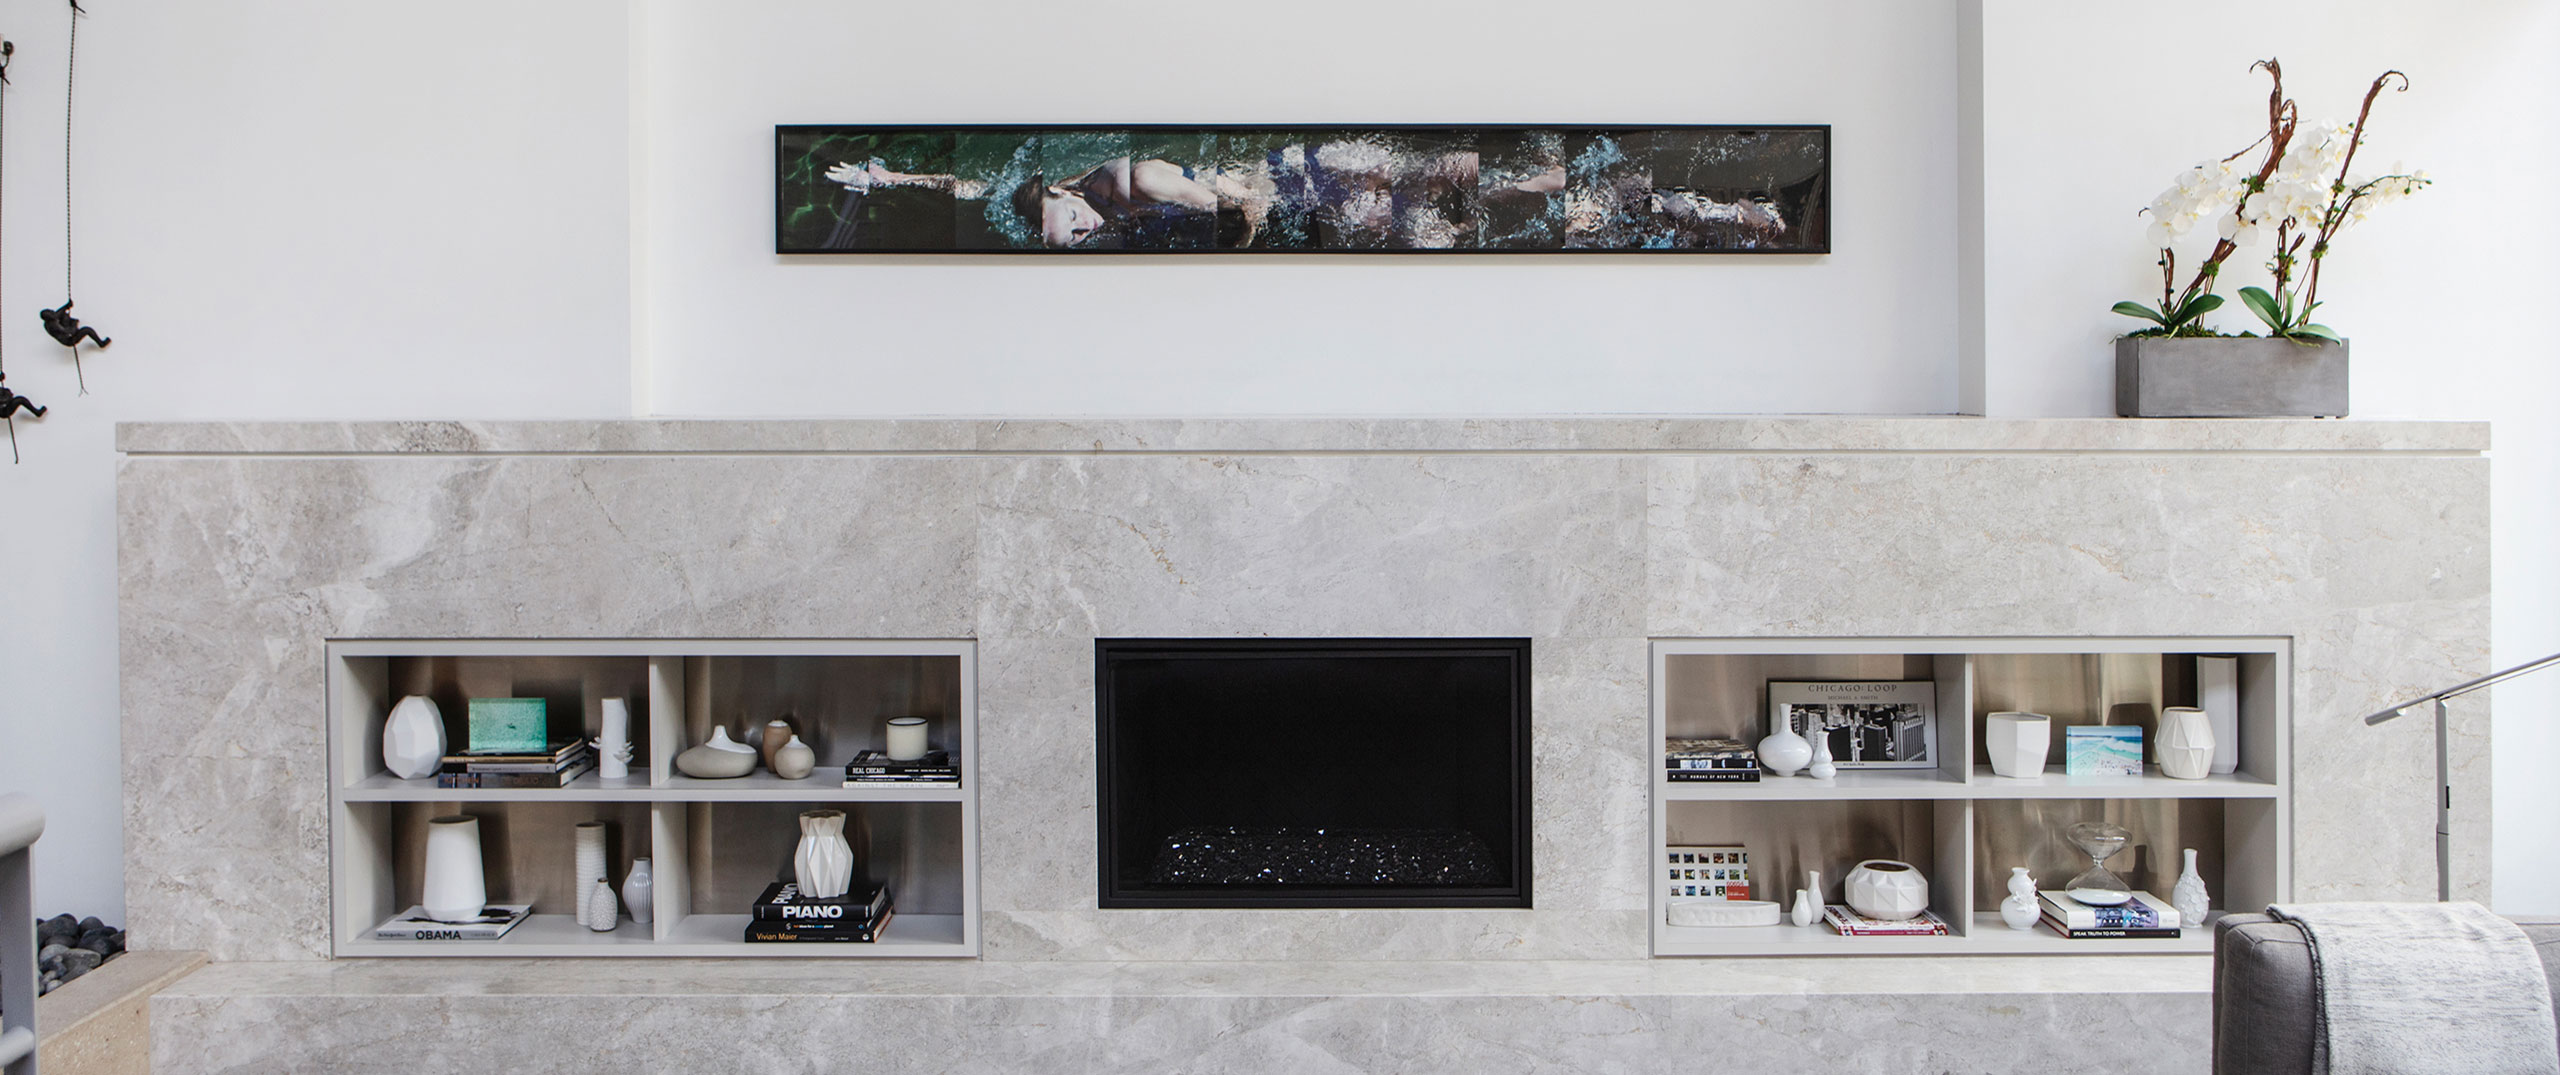 A sleek, modern granite fireplace